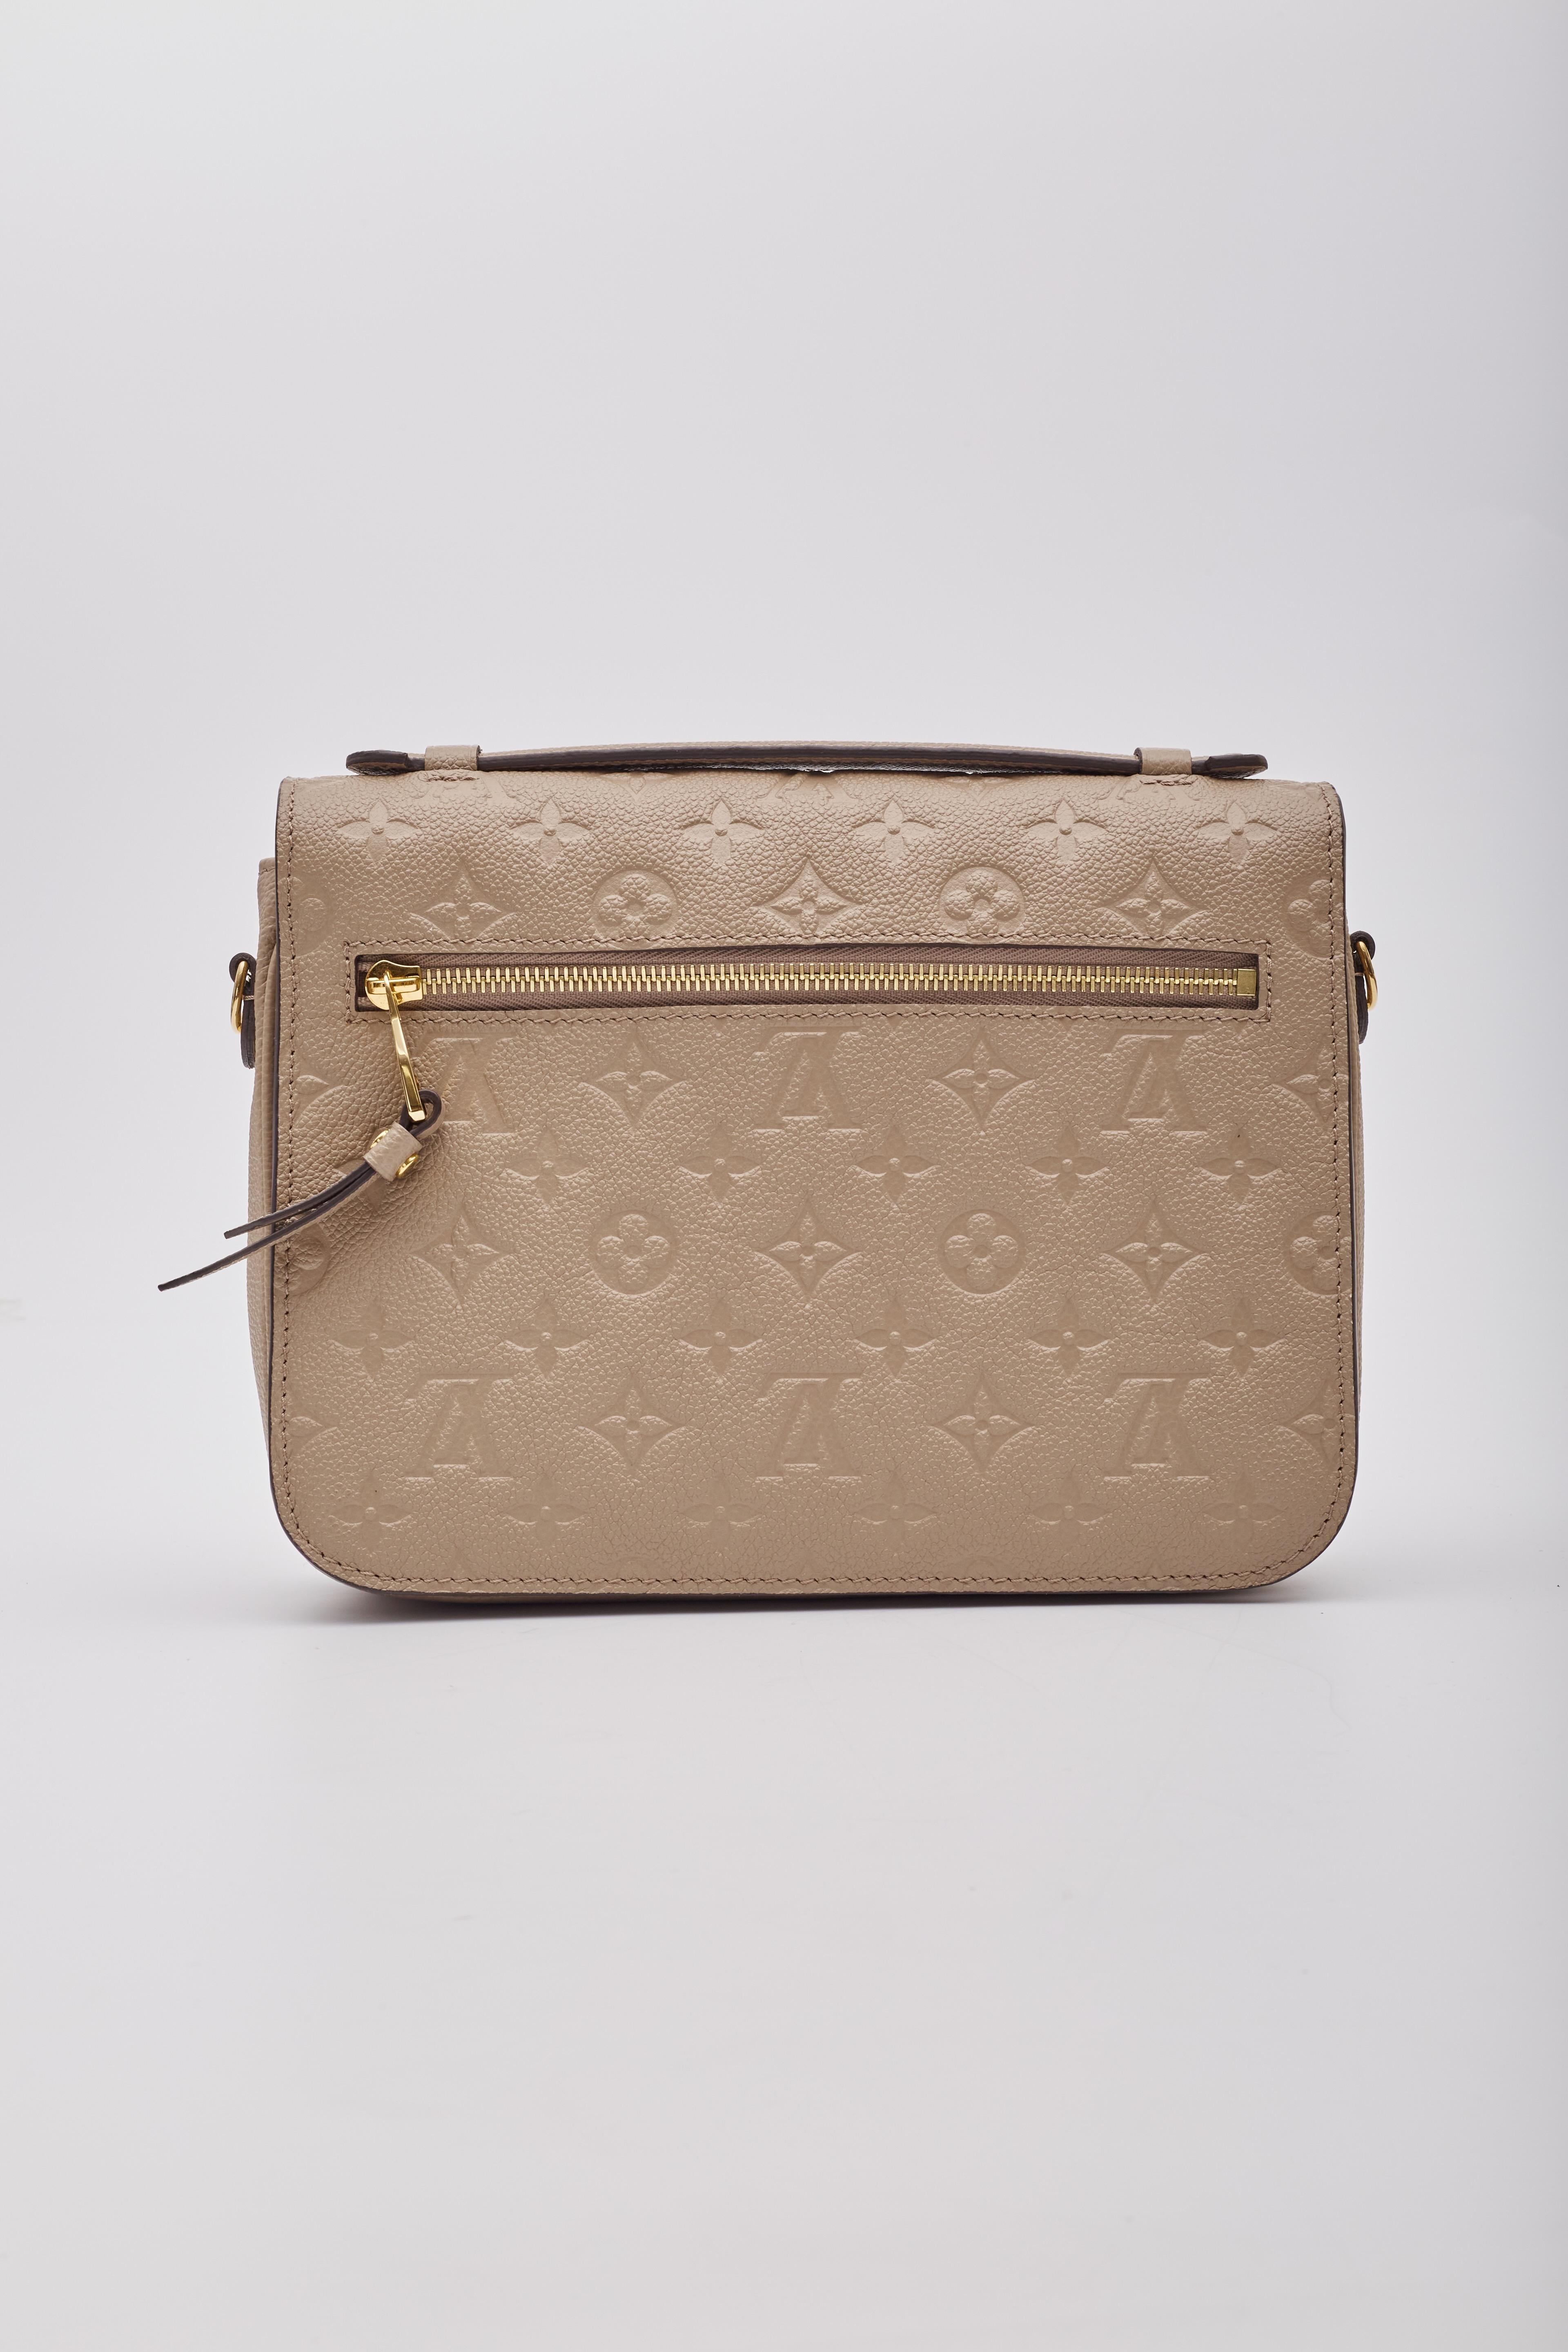 Women's Louis Vuitton Empreinte Tourterelle Pochette Metis Shoulder Bag For Sale